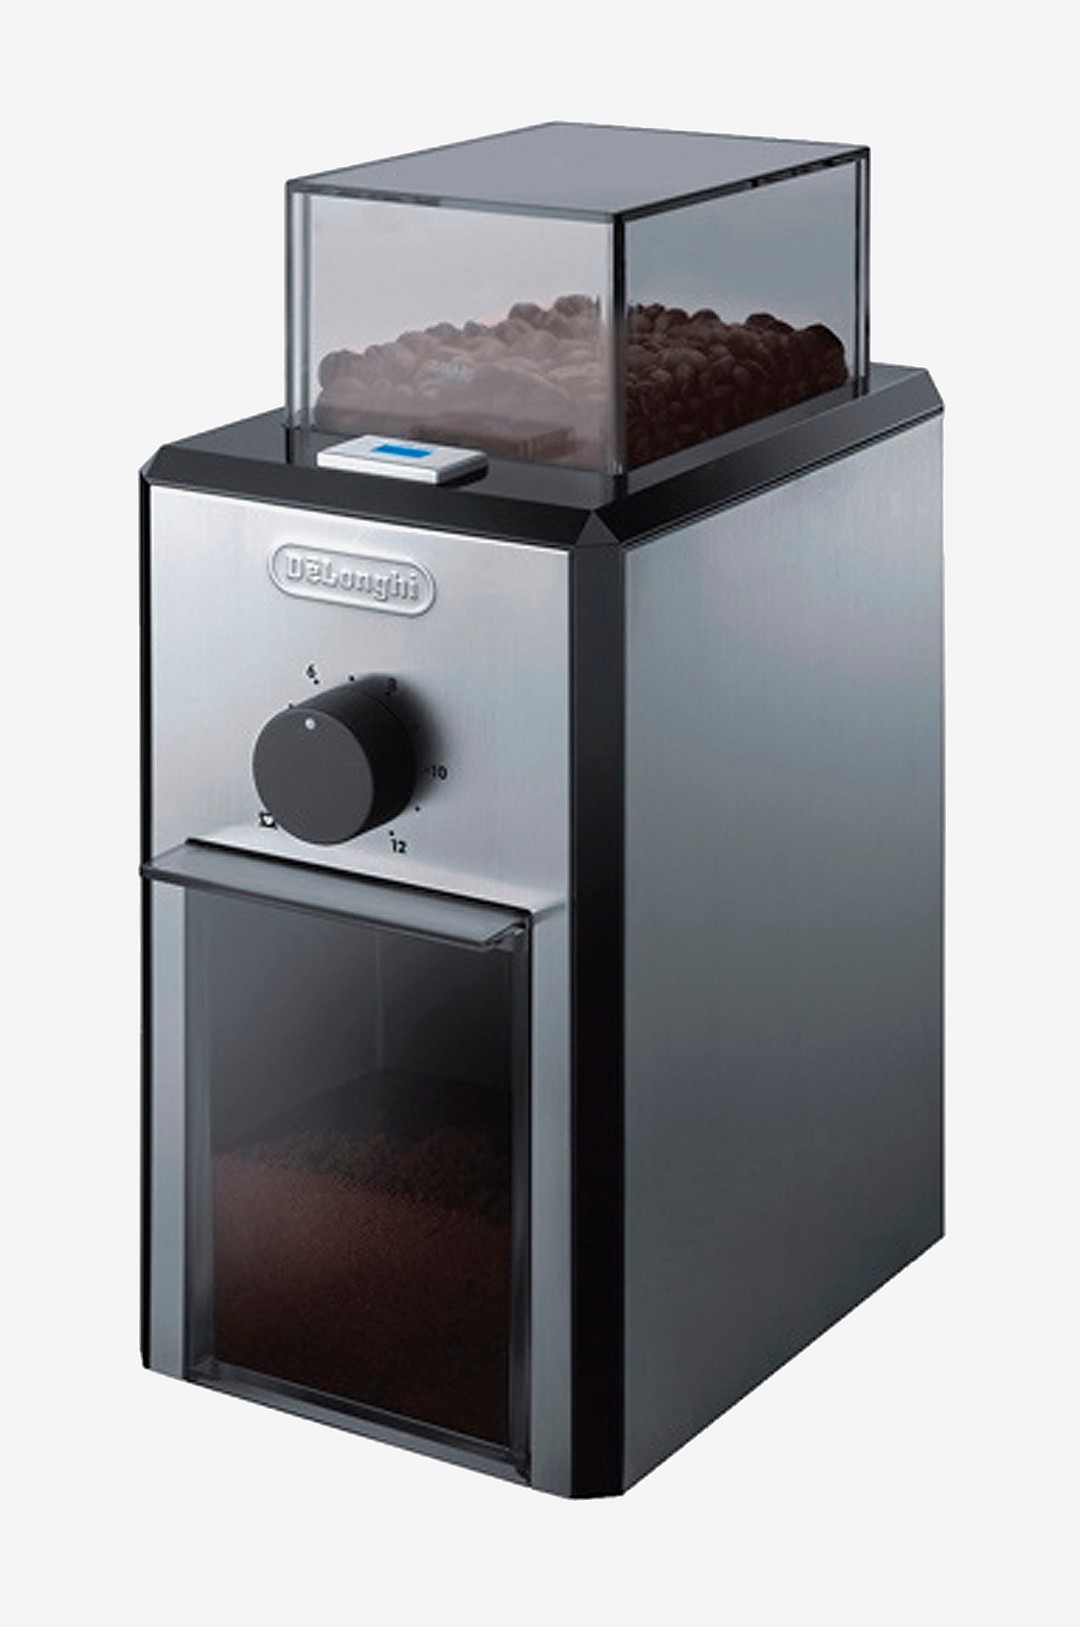 Delonghi - Kaffekvarn Kg89 120g